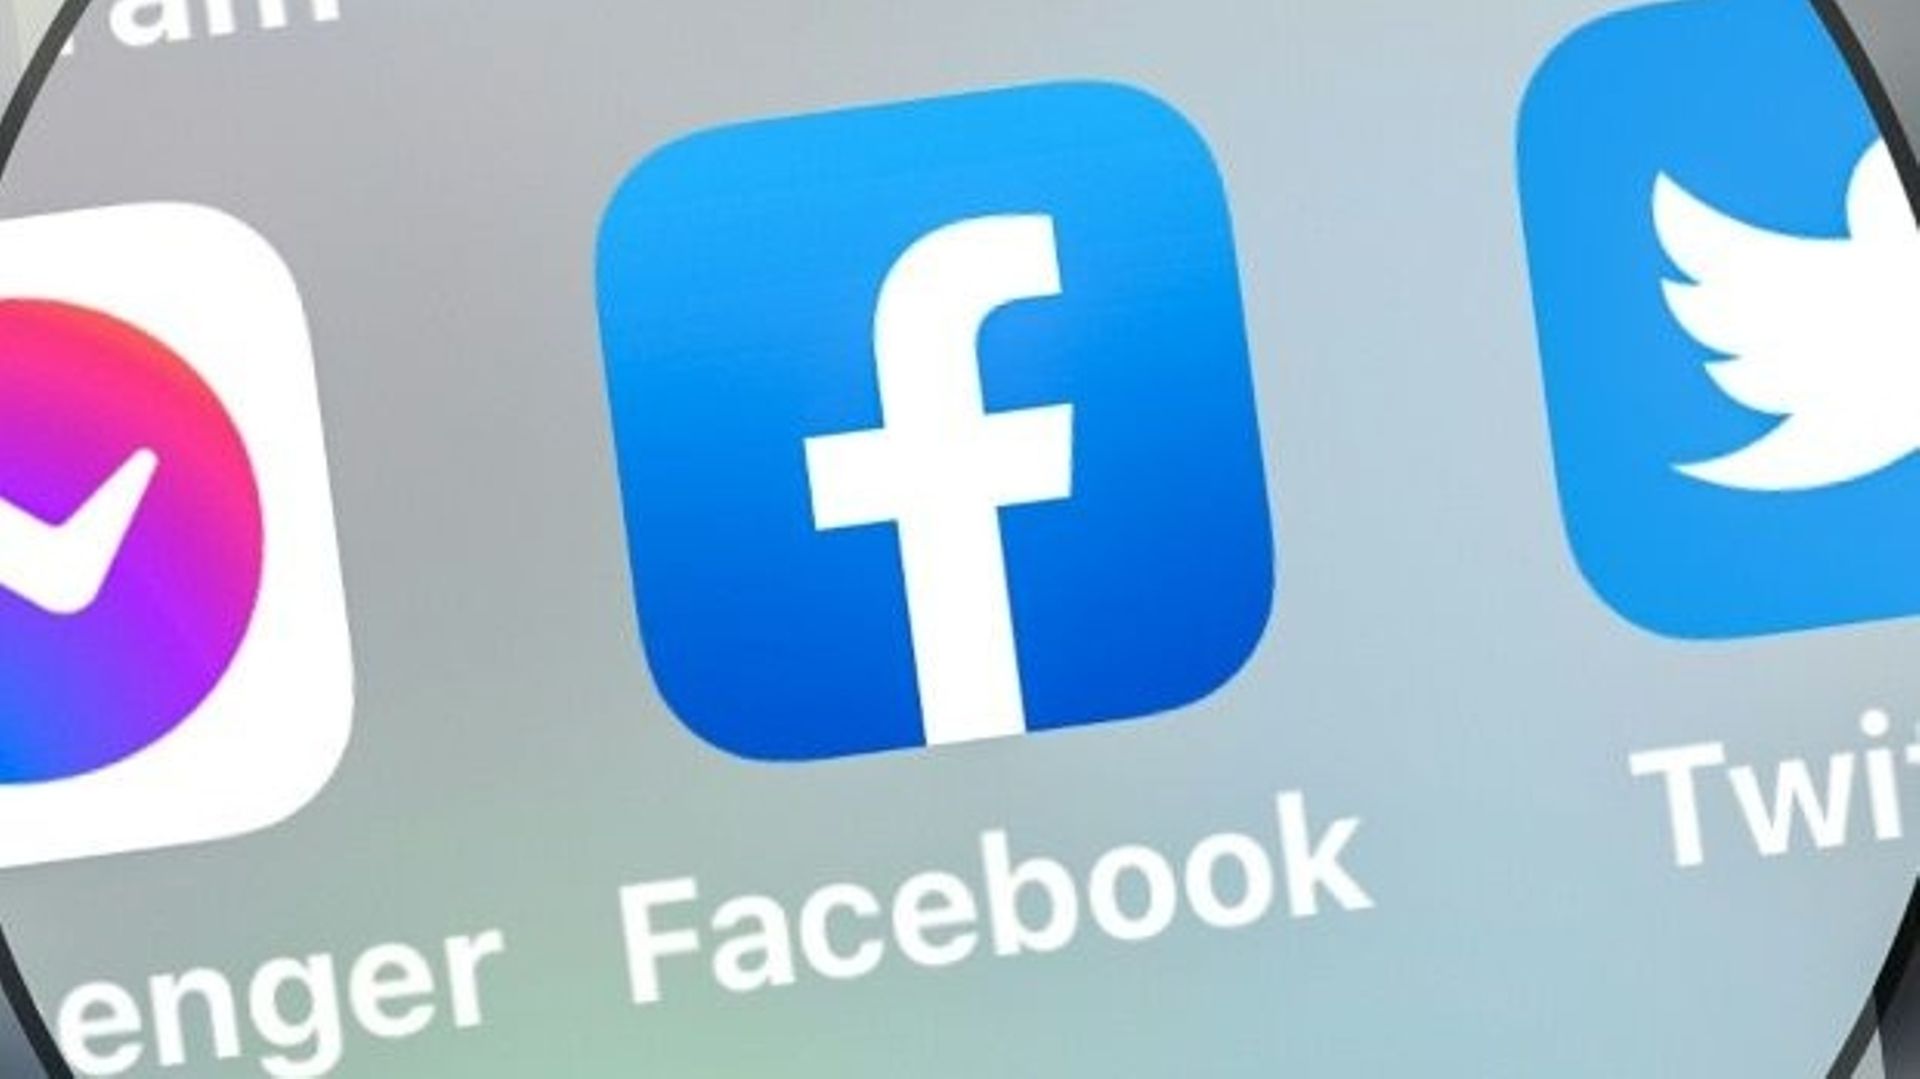 Facebook n'est plus utilisé que par un tiers des ados américains, selon une étude.